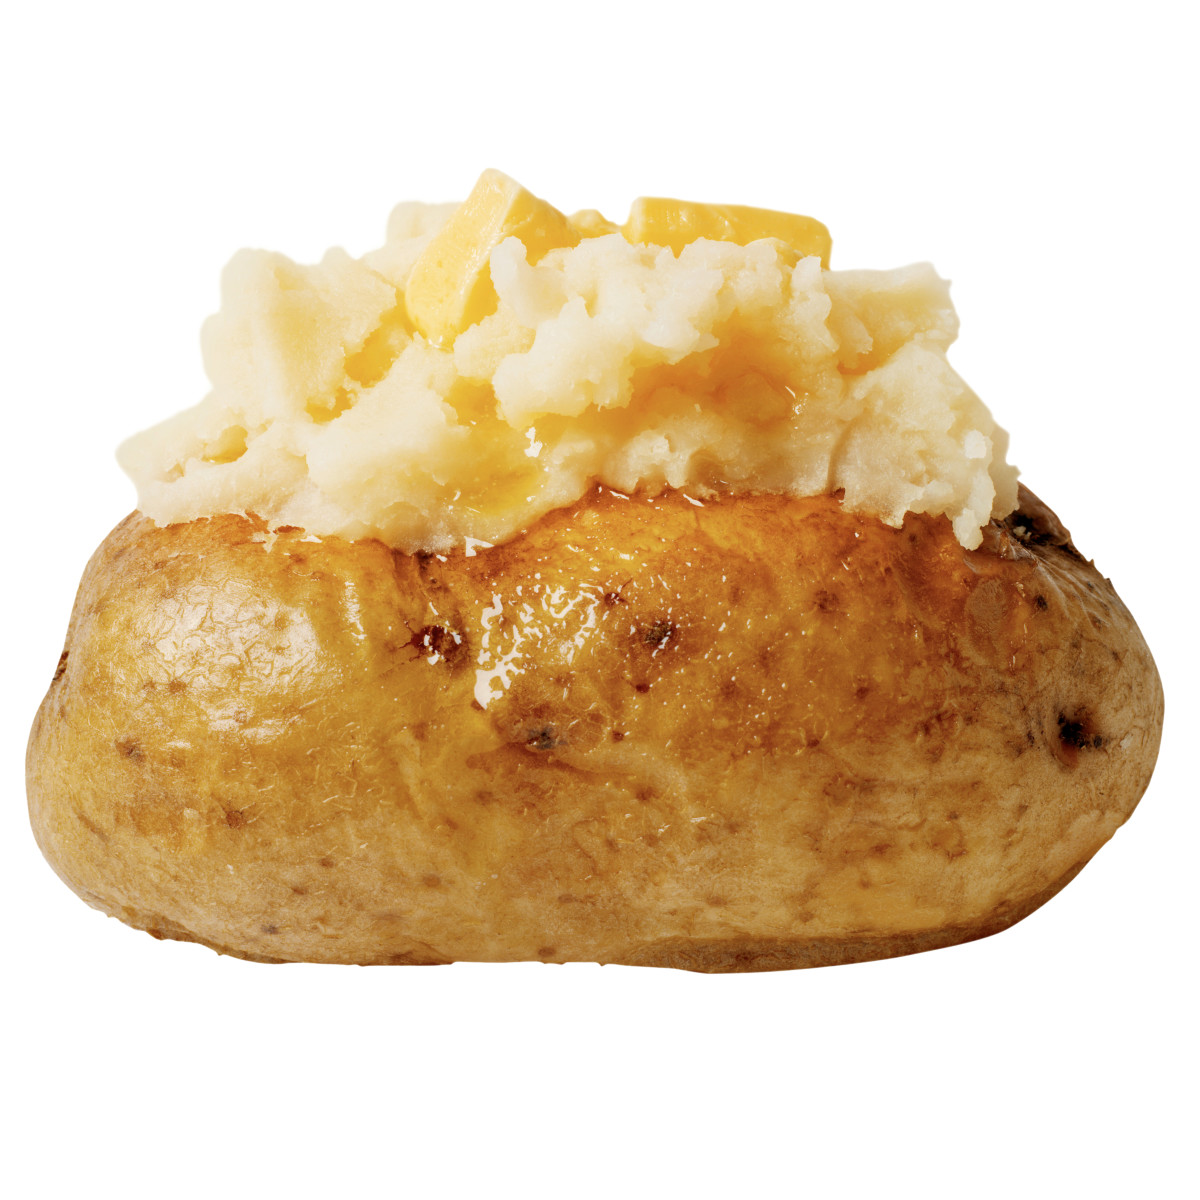 Basic Baked Potato